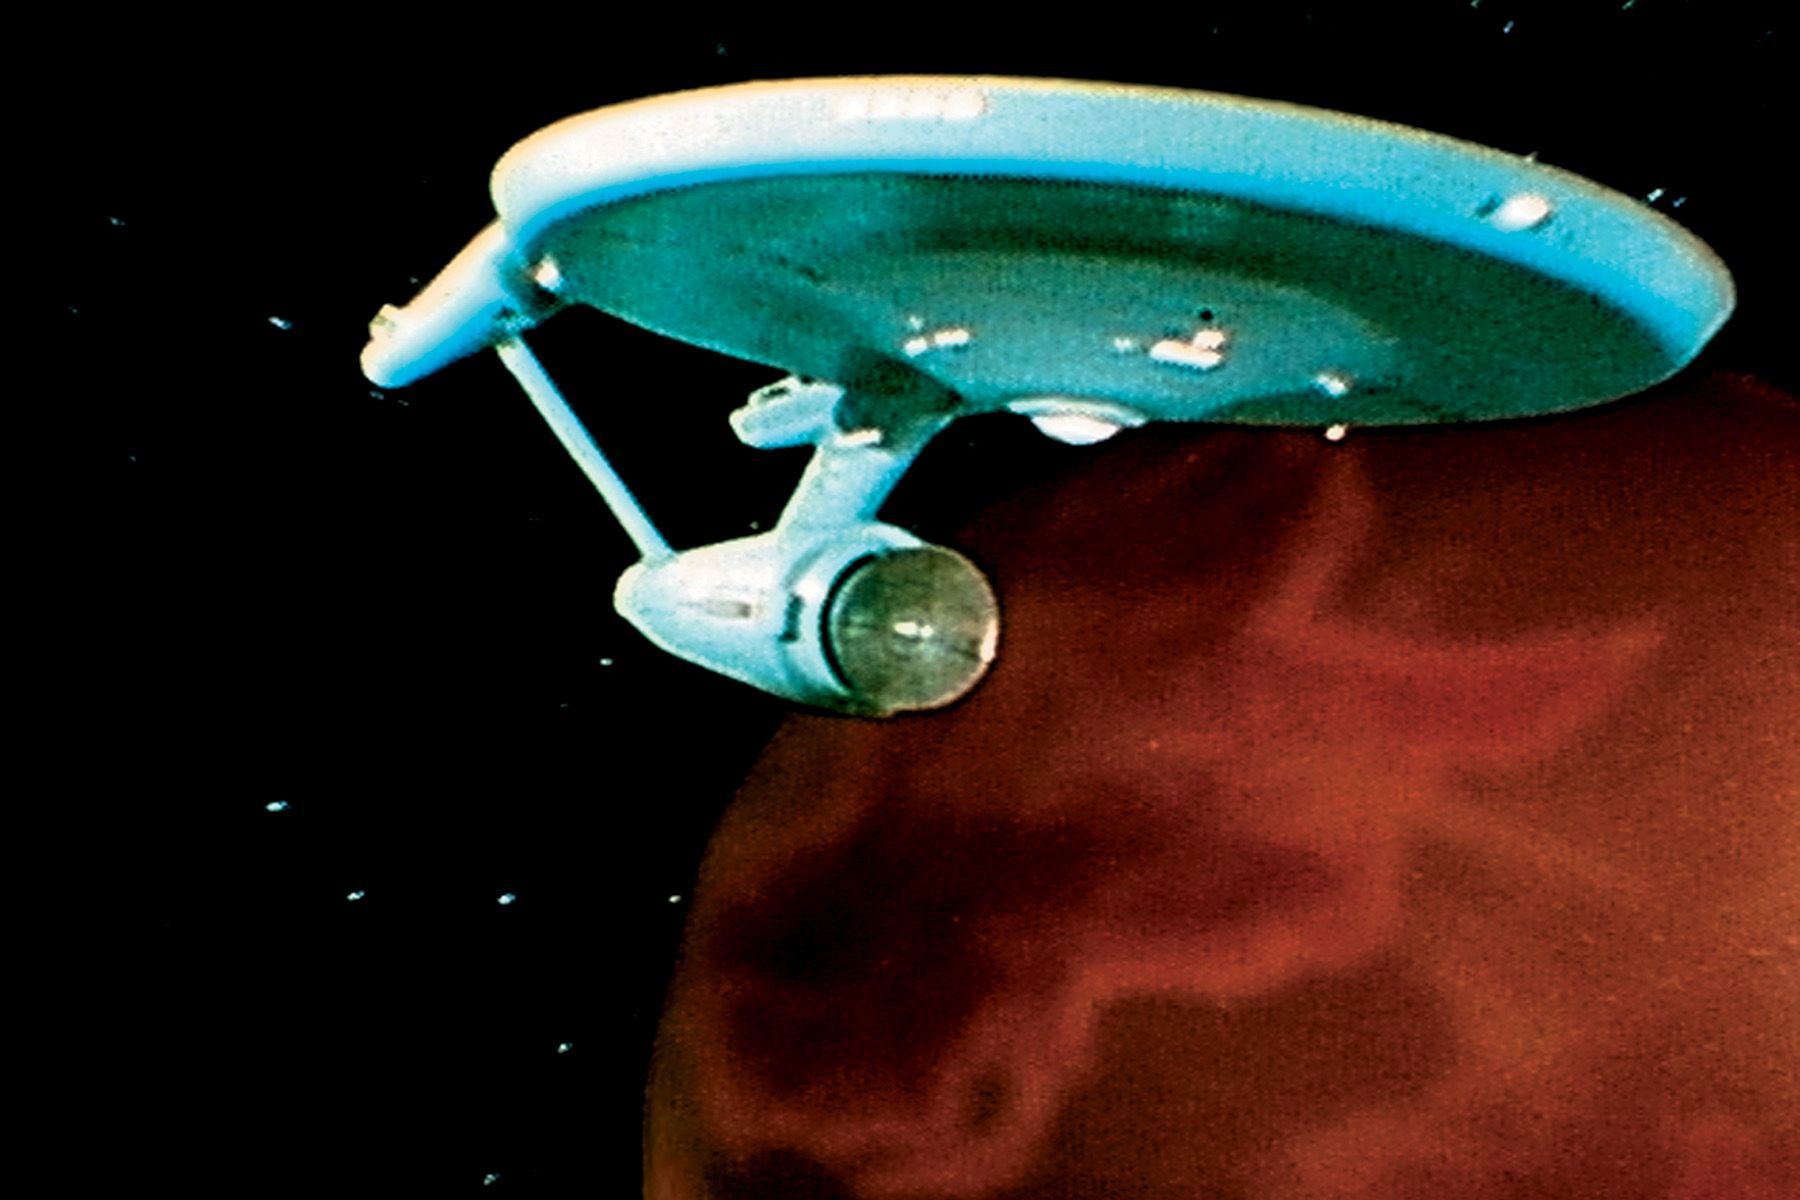 Star Trek's starship Enterprise